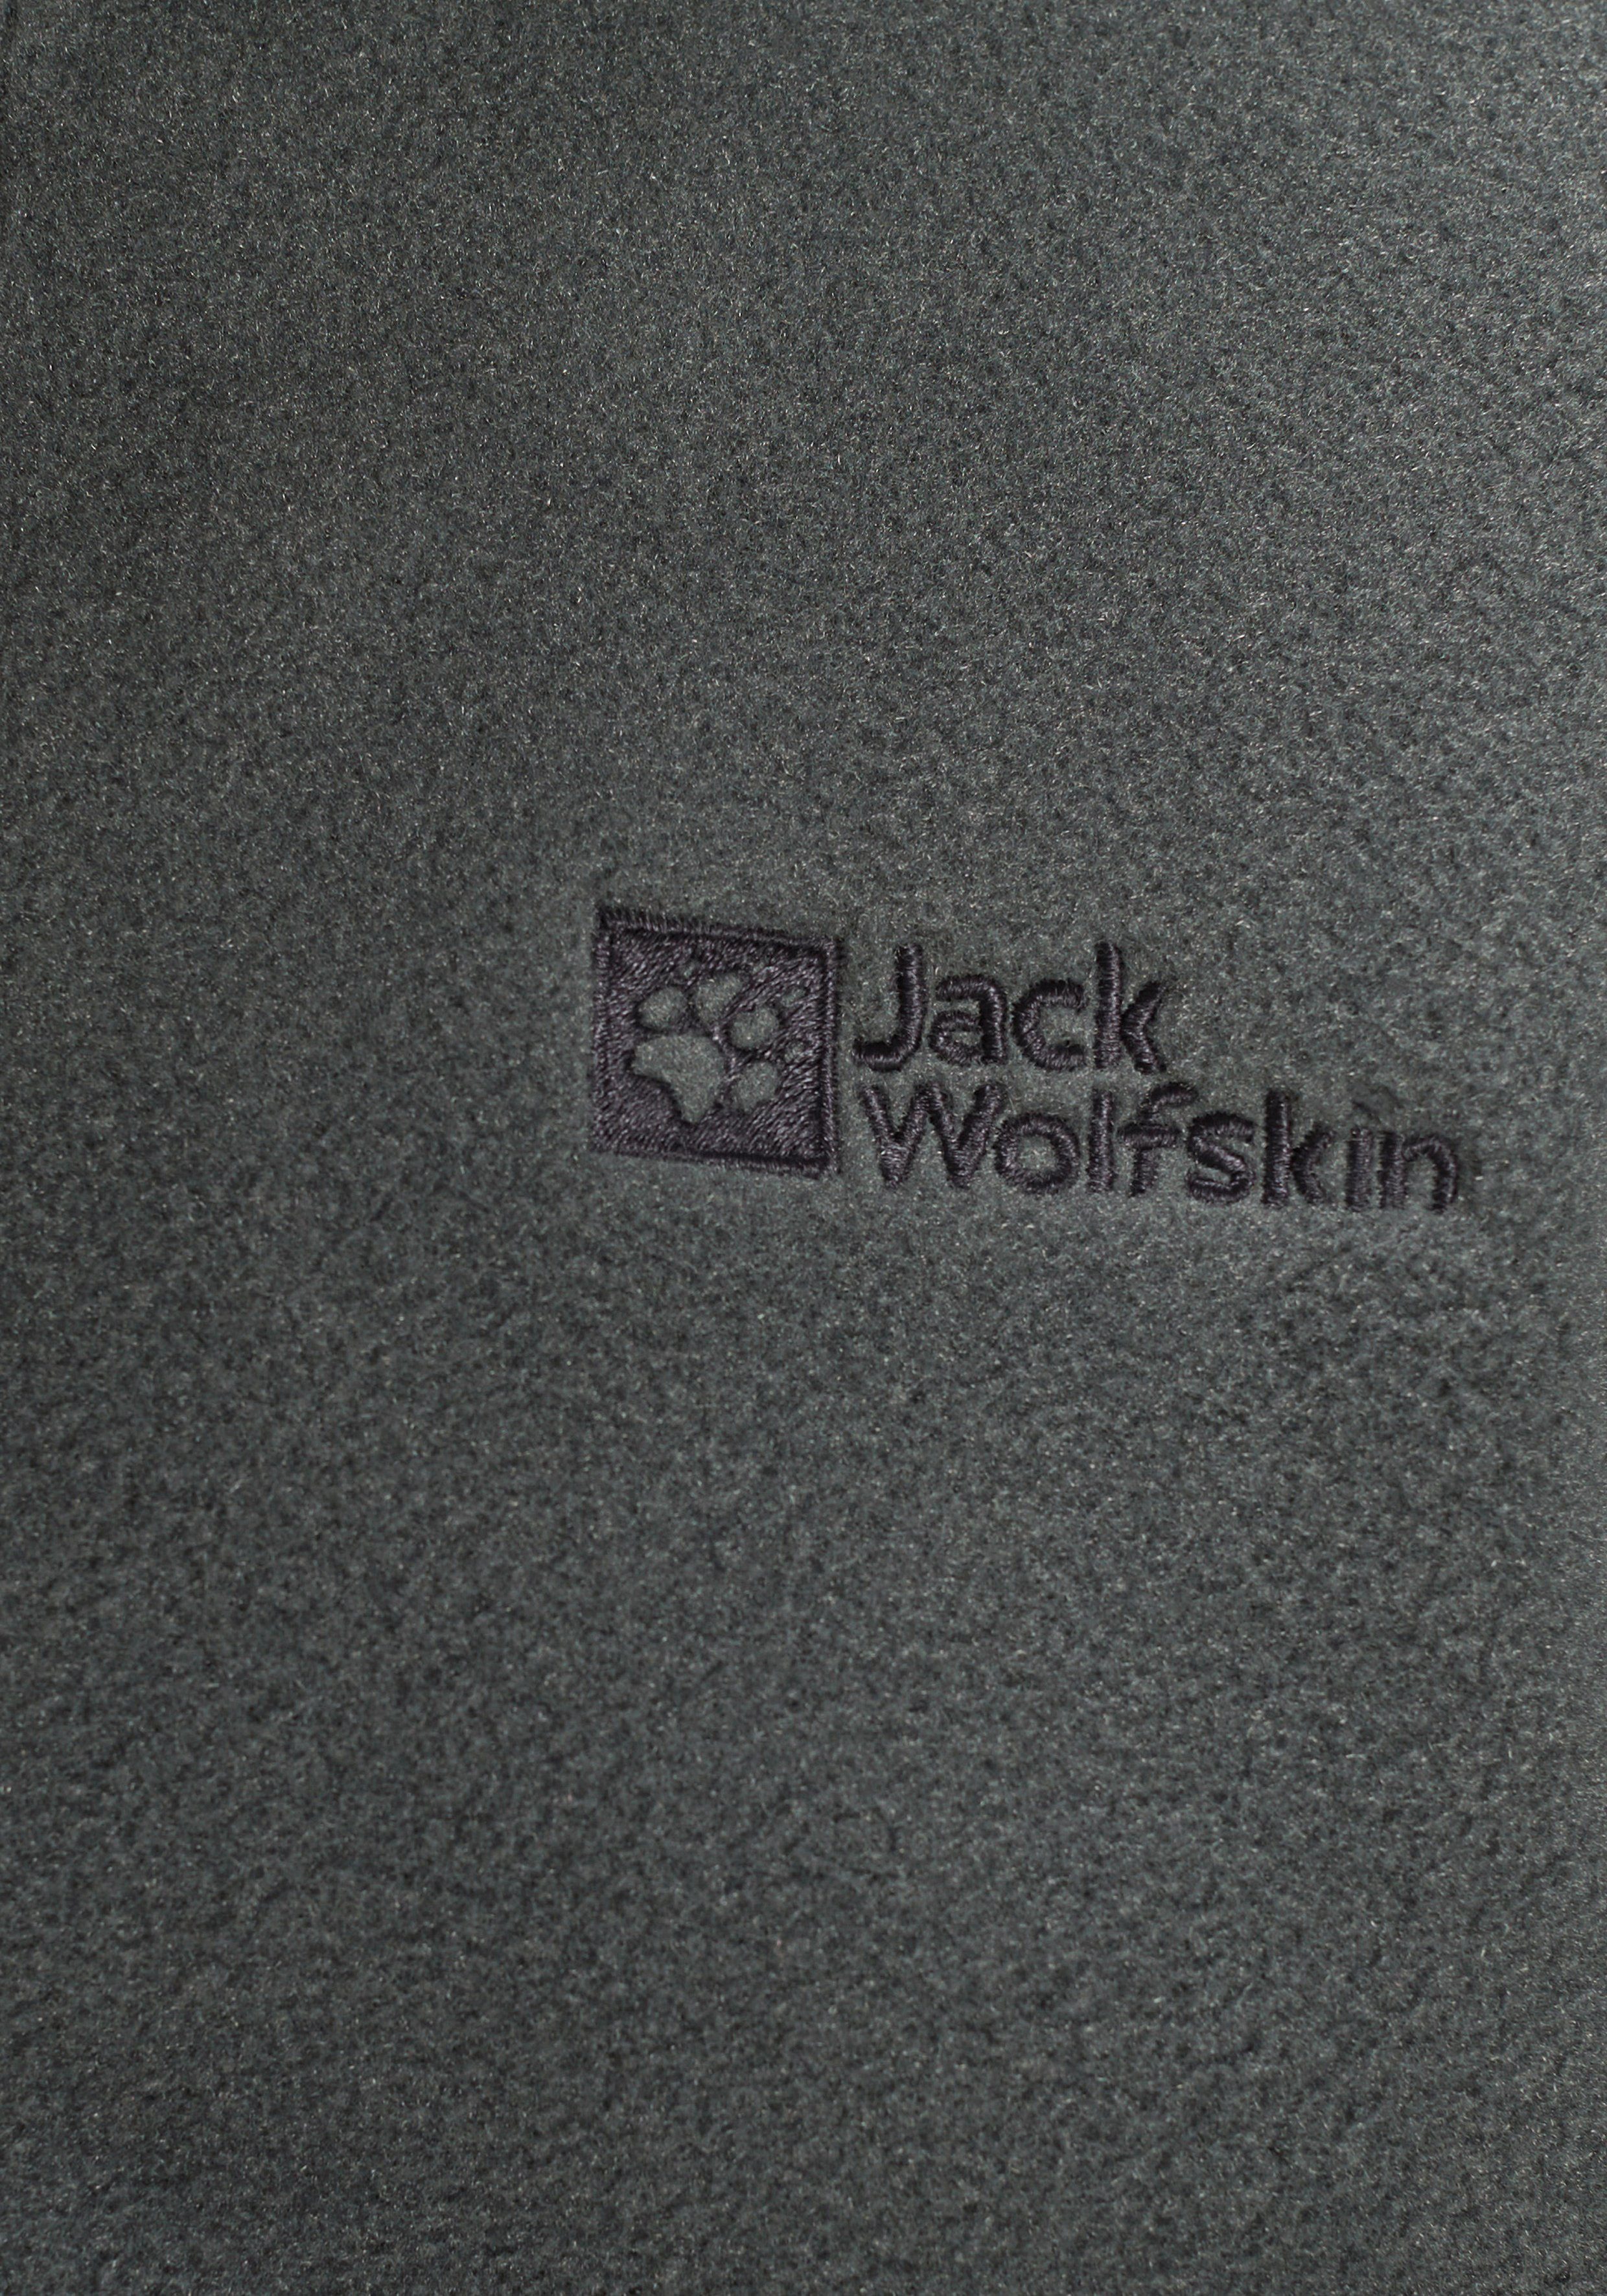 green aus slate WINTERSTEIN Recyclingmaterial JACKET Jack K Wolfskin Fleecejacke